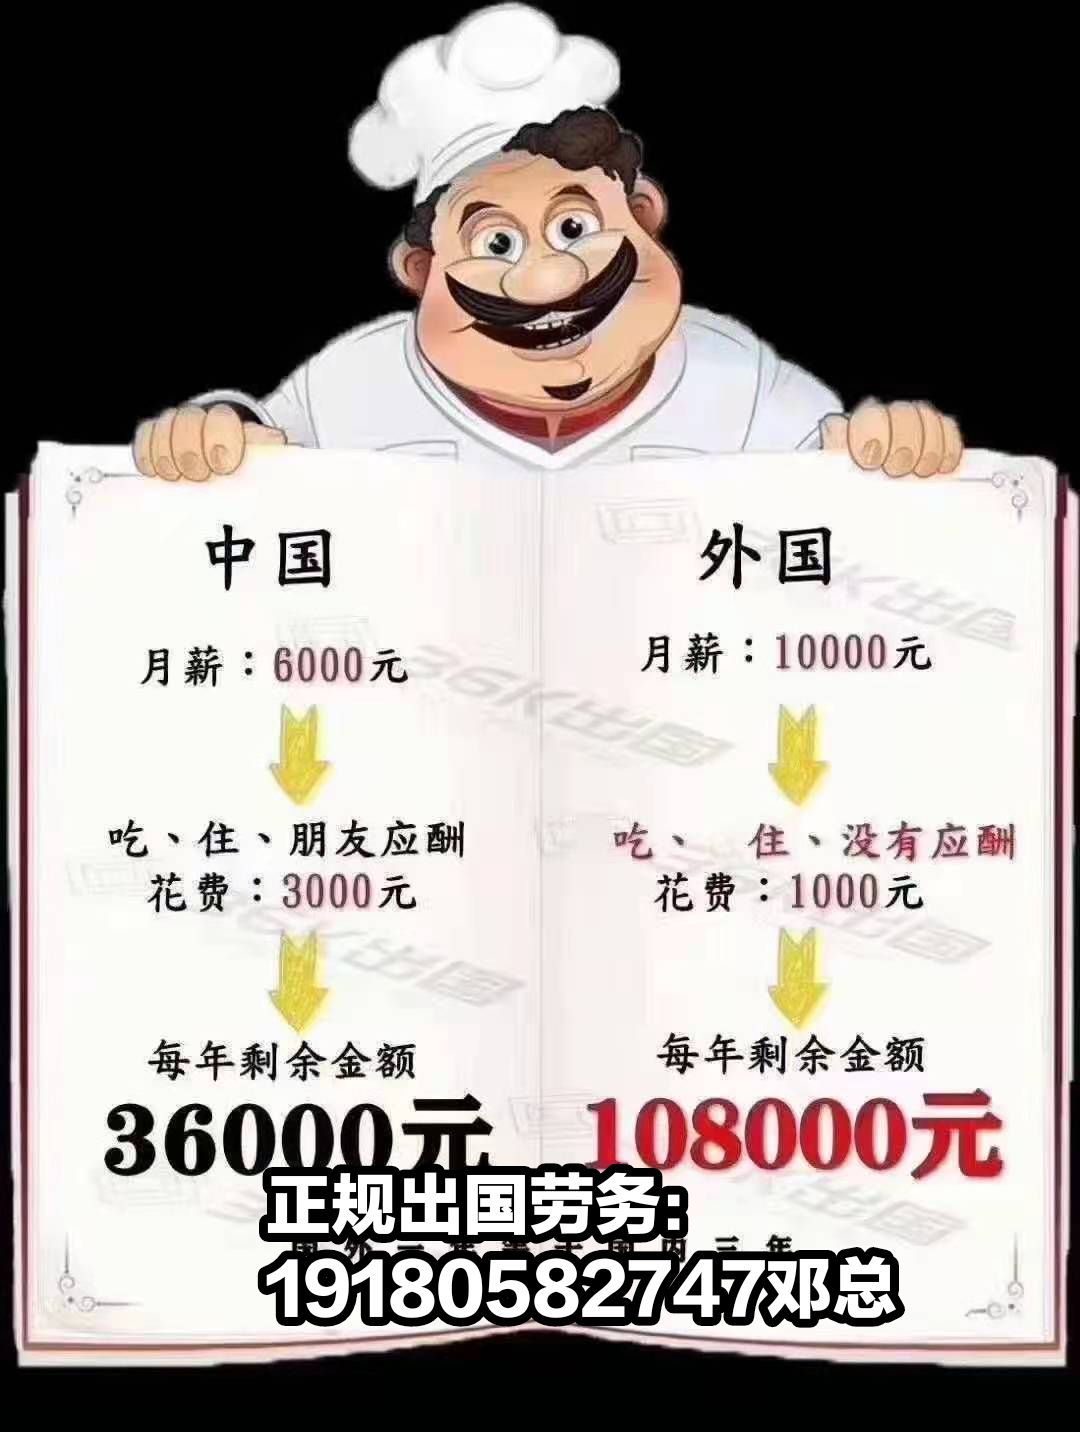 清水河县出国一人免费年薪50万